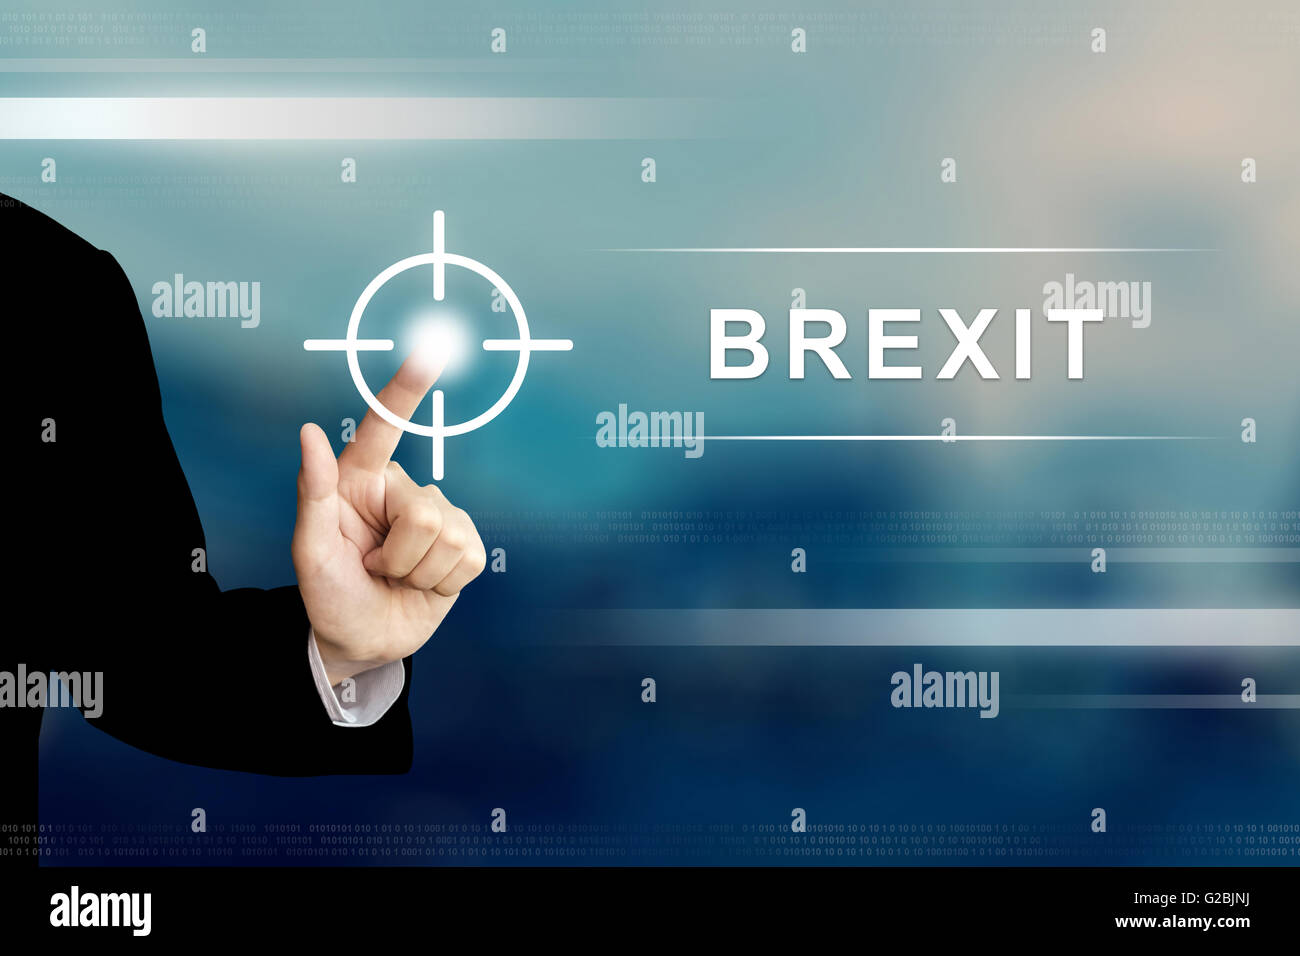 La main d'affaires poussant brexit ou la touche quitter sur une interface d'écran tactile Banque D'Images